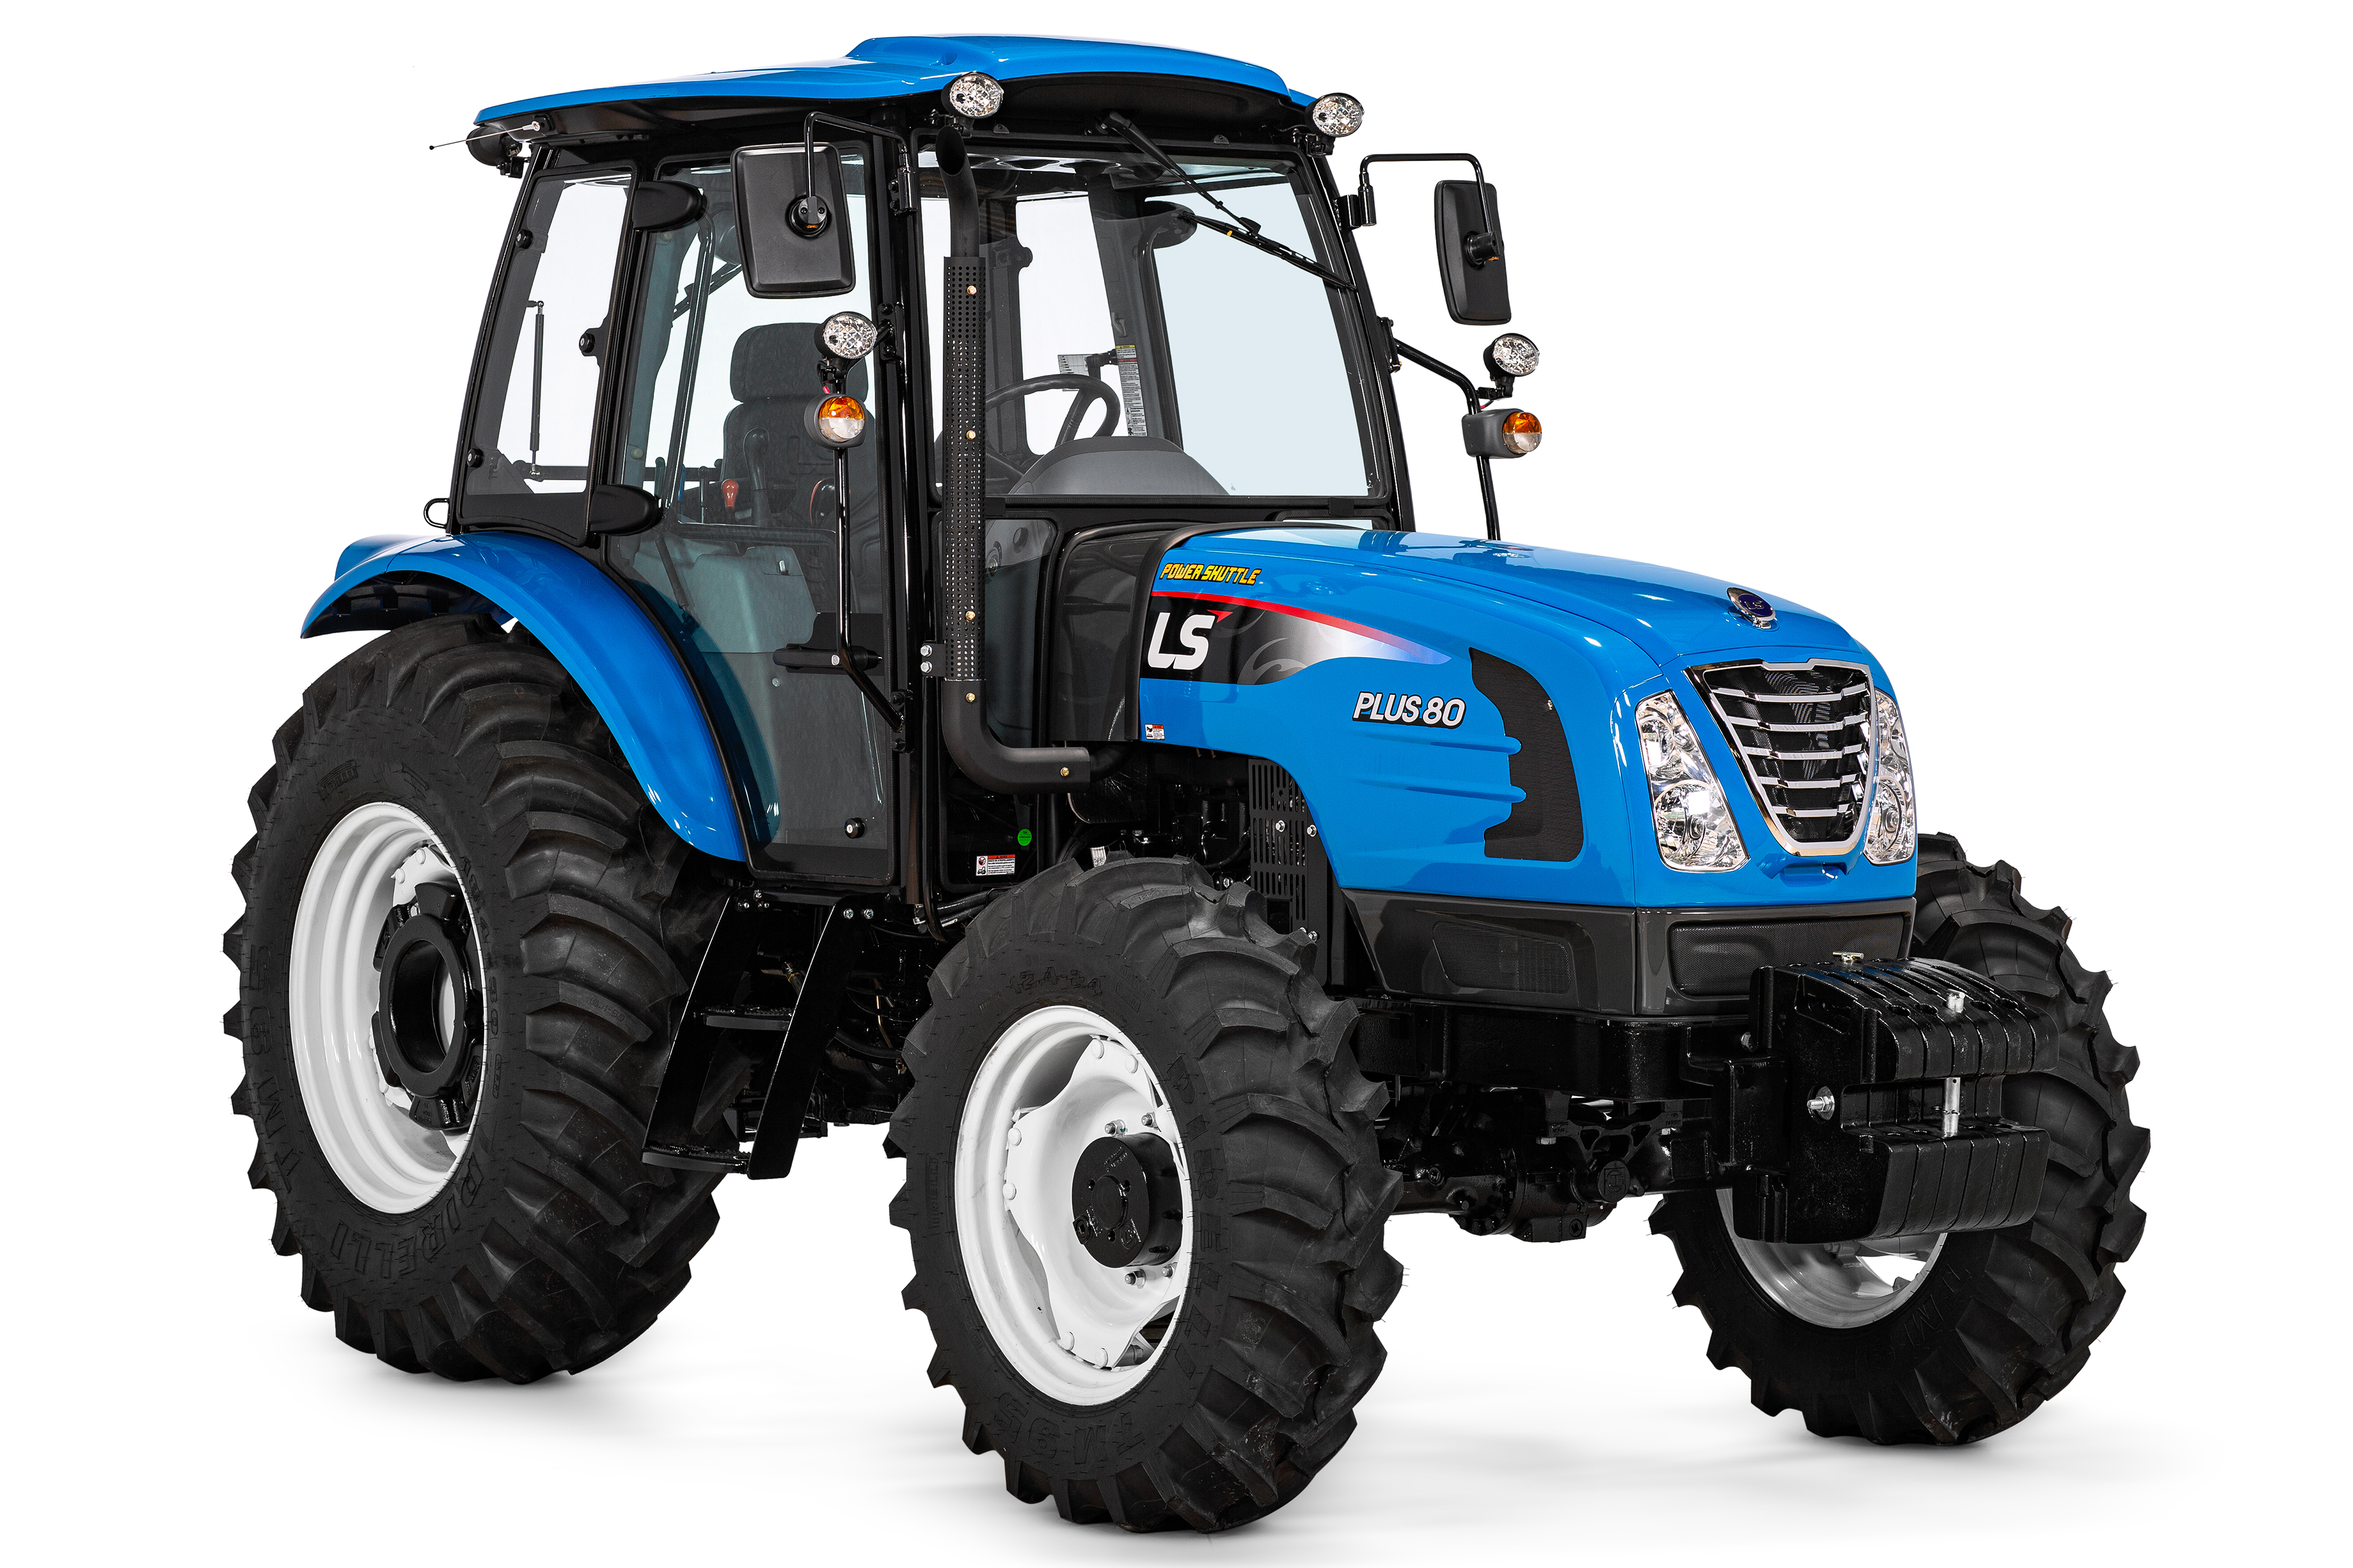 PLUS 80 Cafeeiro é um novo produto da LS Tractor